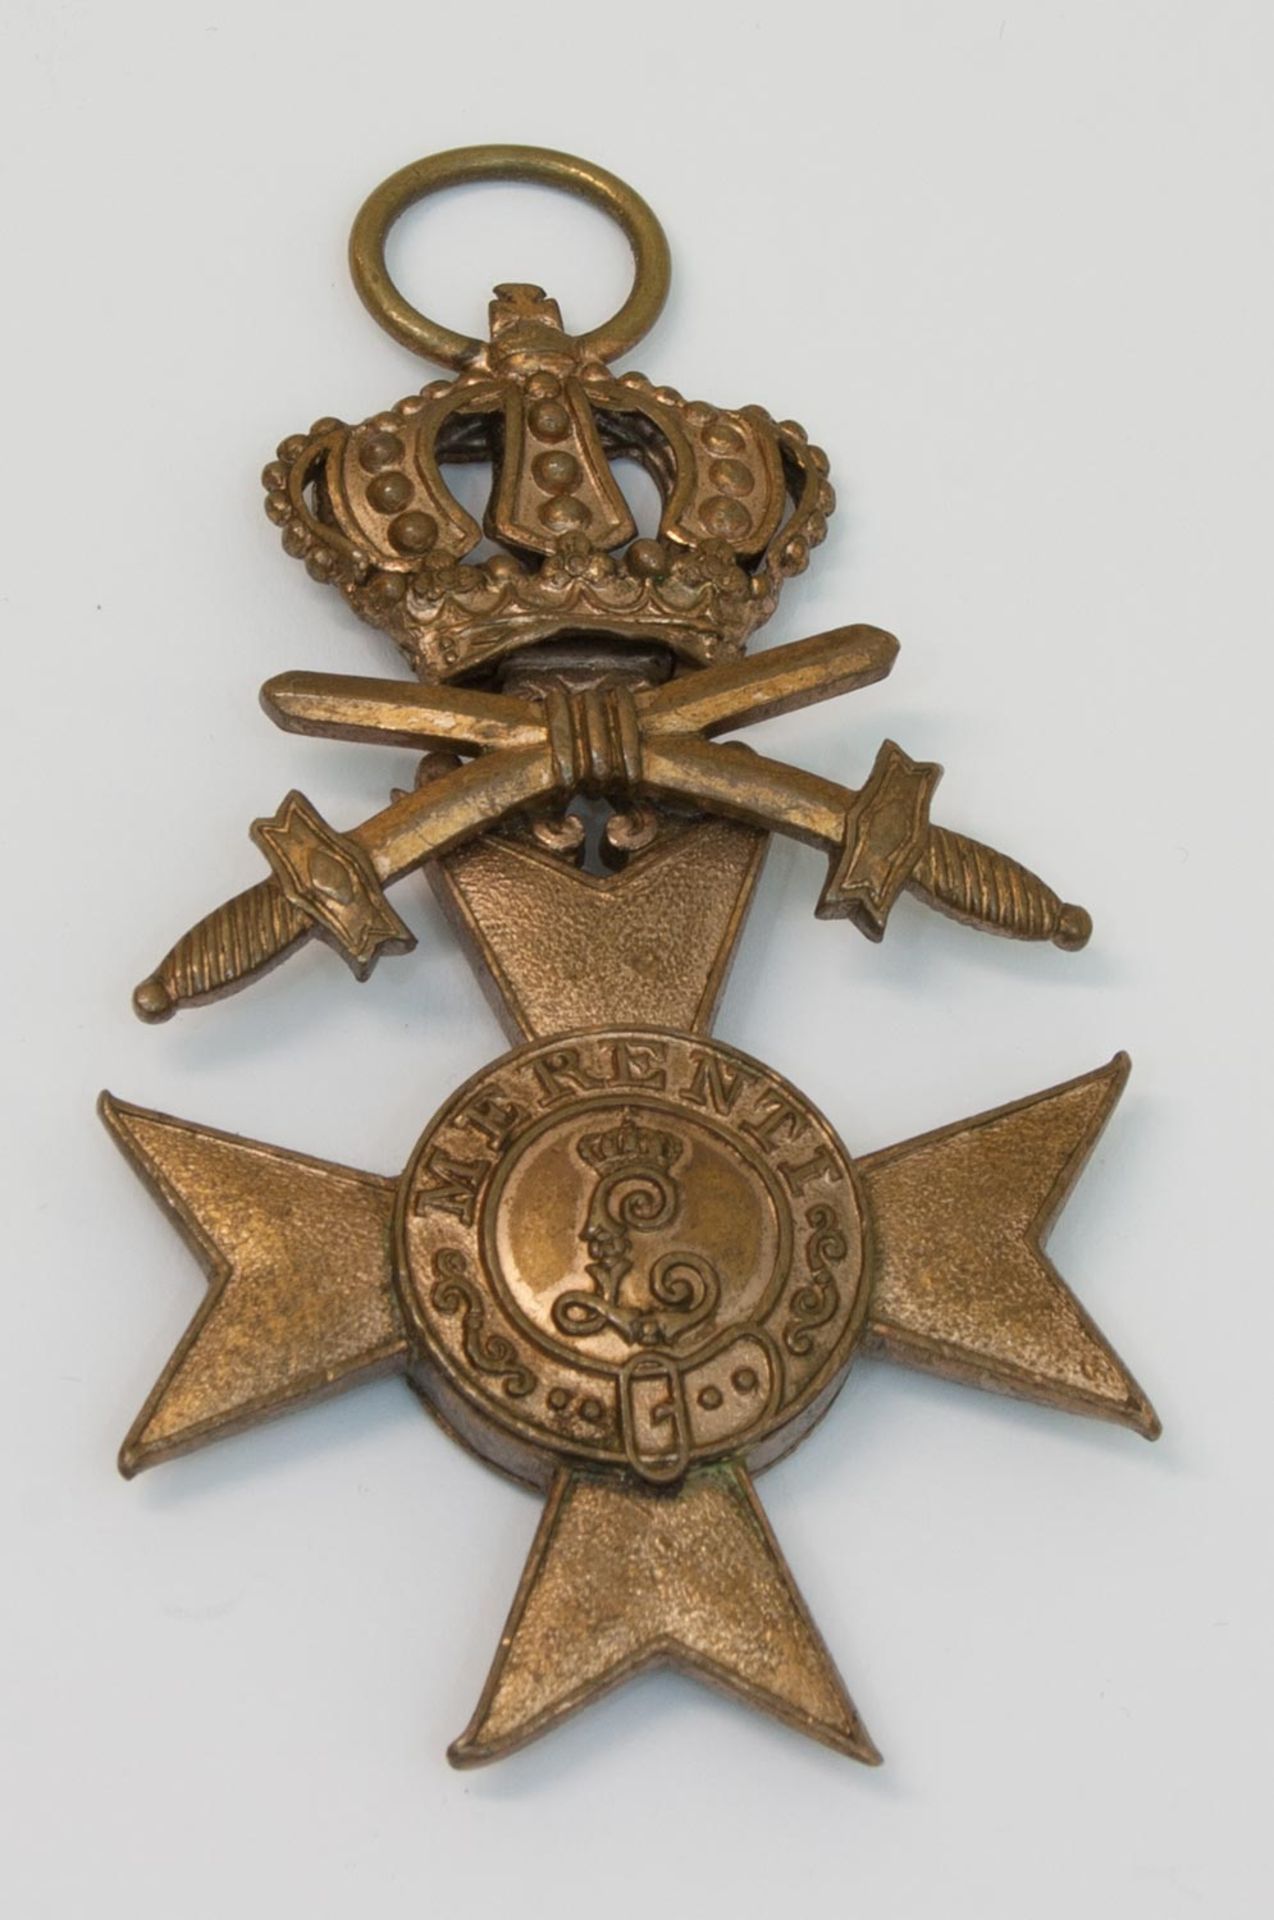 OrdenBayerisches Militärverdienstkreuz III. Klasse mit Krone und SchwerternMindestpreis: 20 EUR